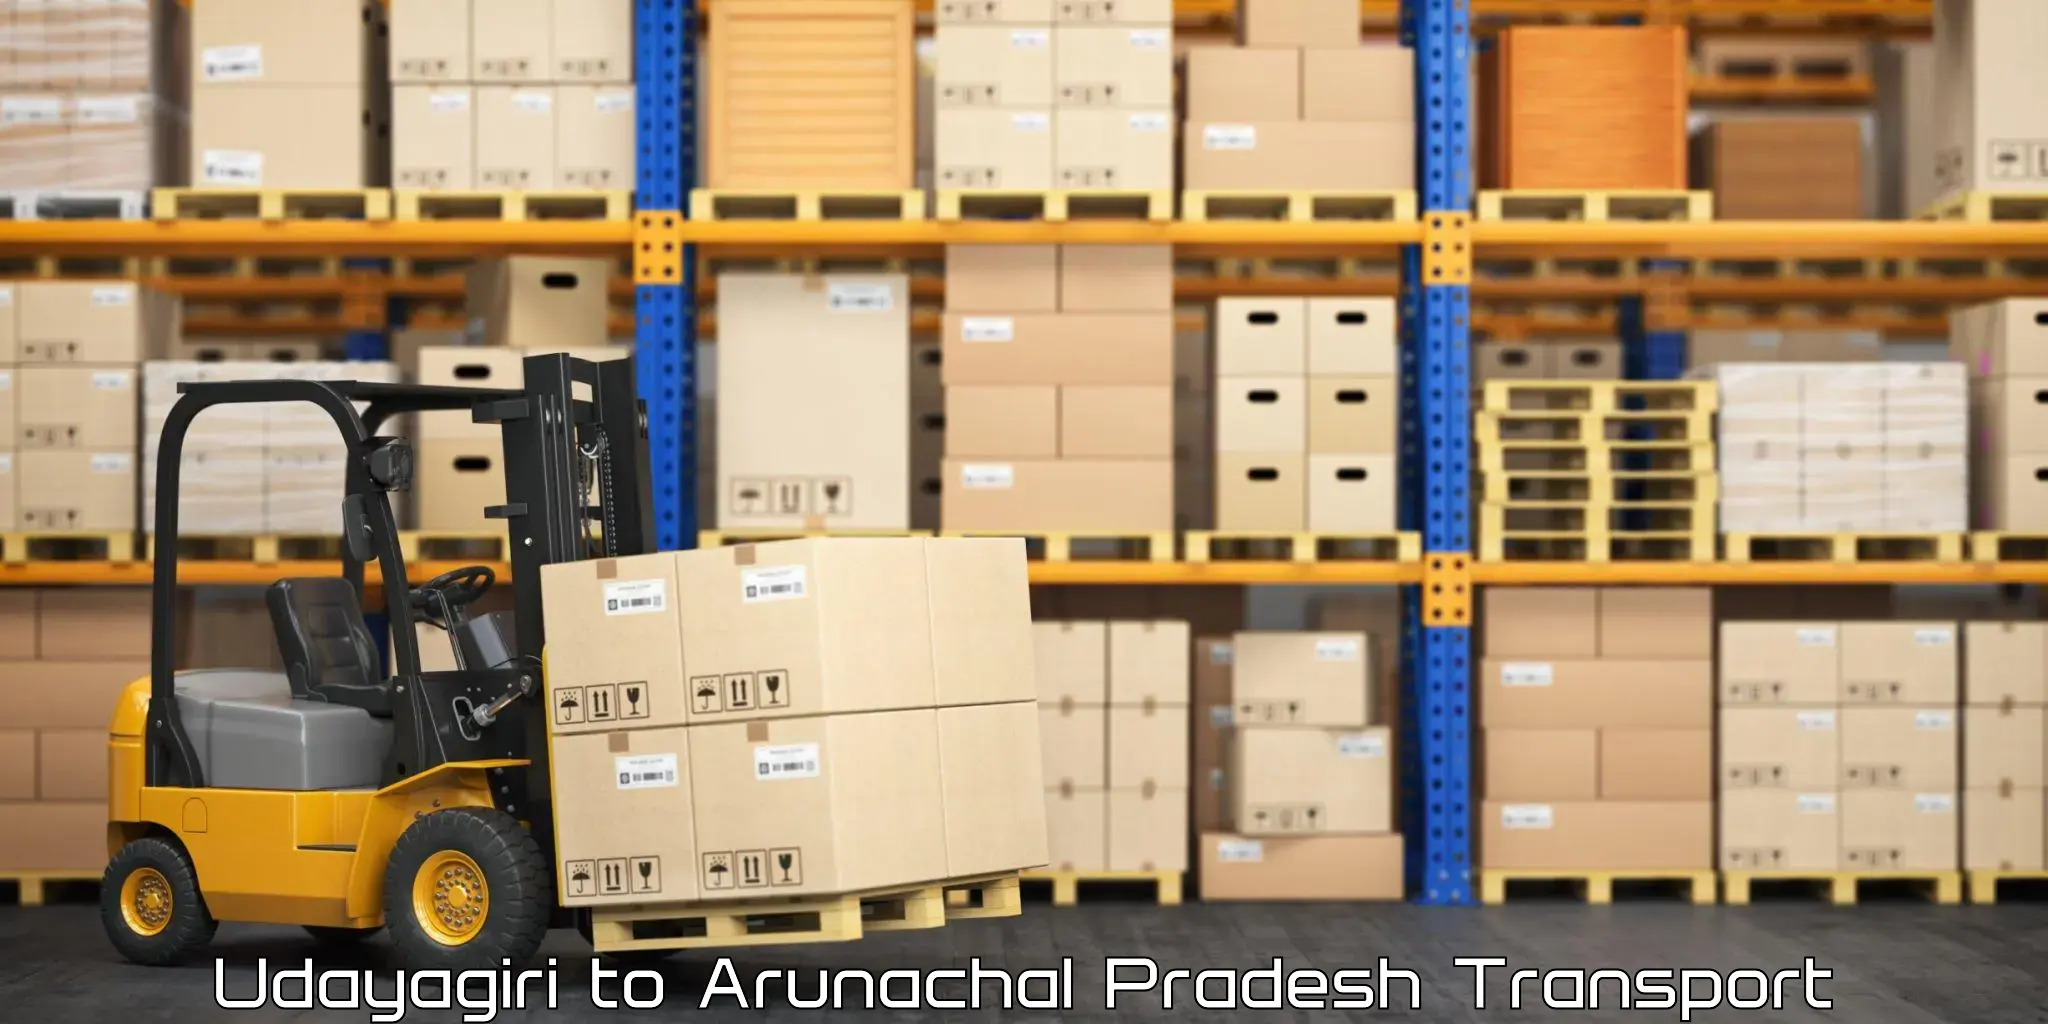 Furniture transport service Udayagiri to Arunachal Pradesh